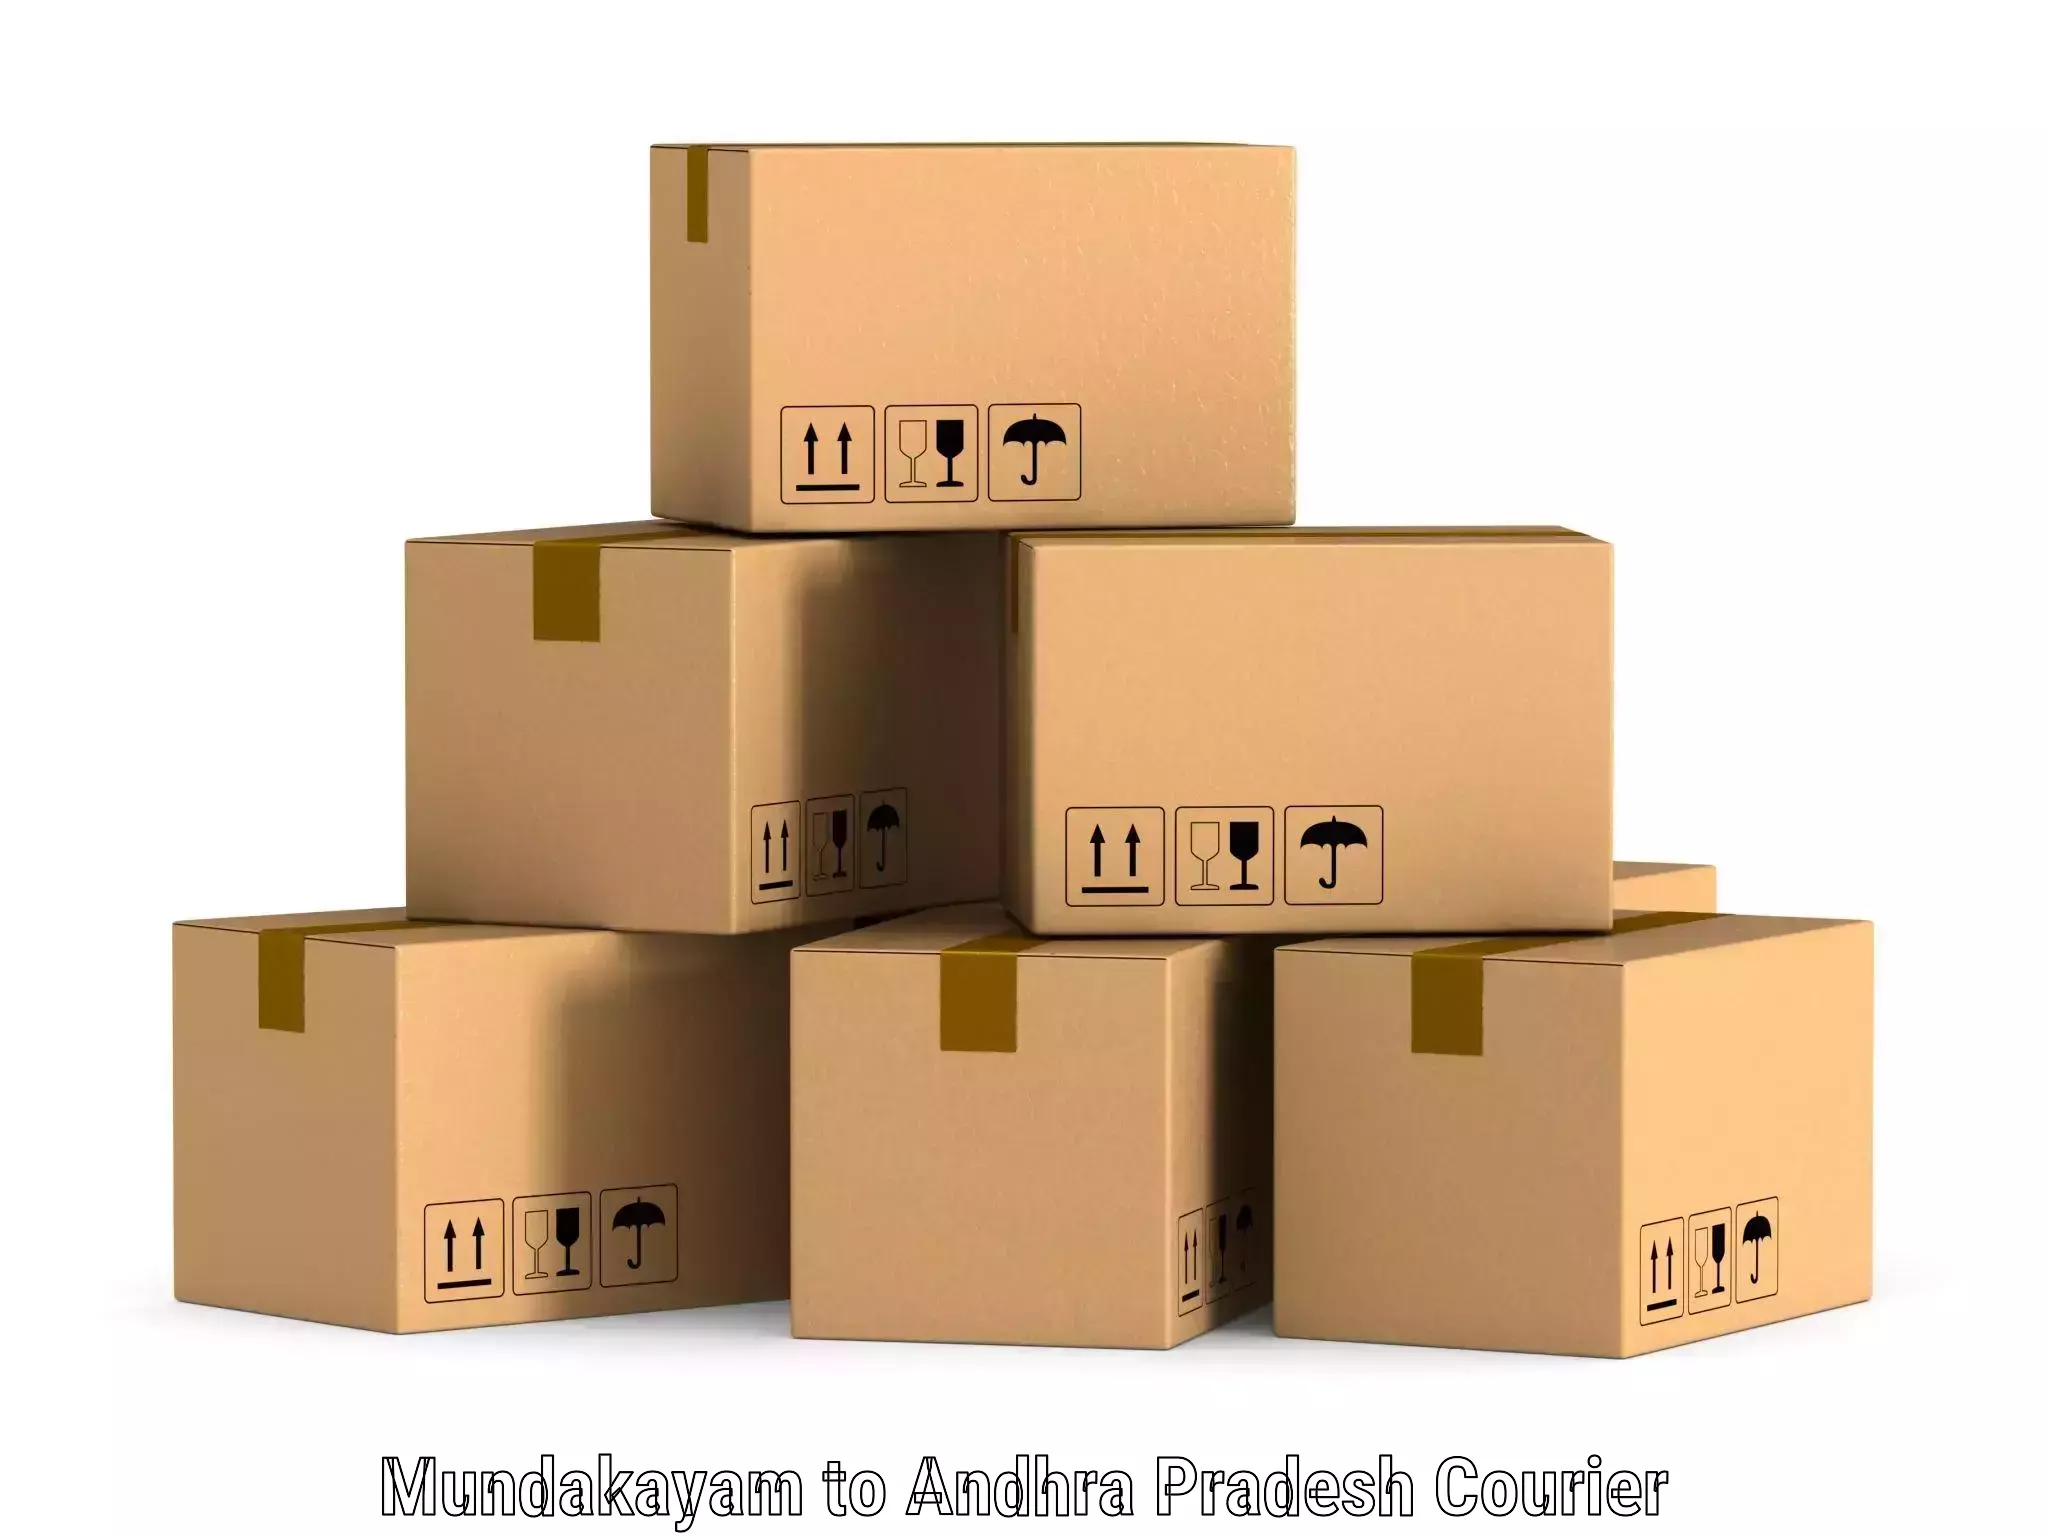 High-capacity courier solutions Mundakayam to Kambadur